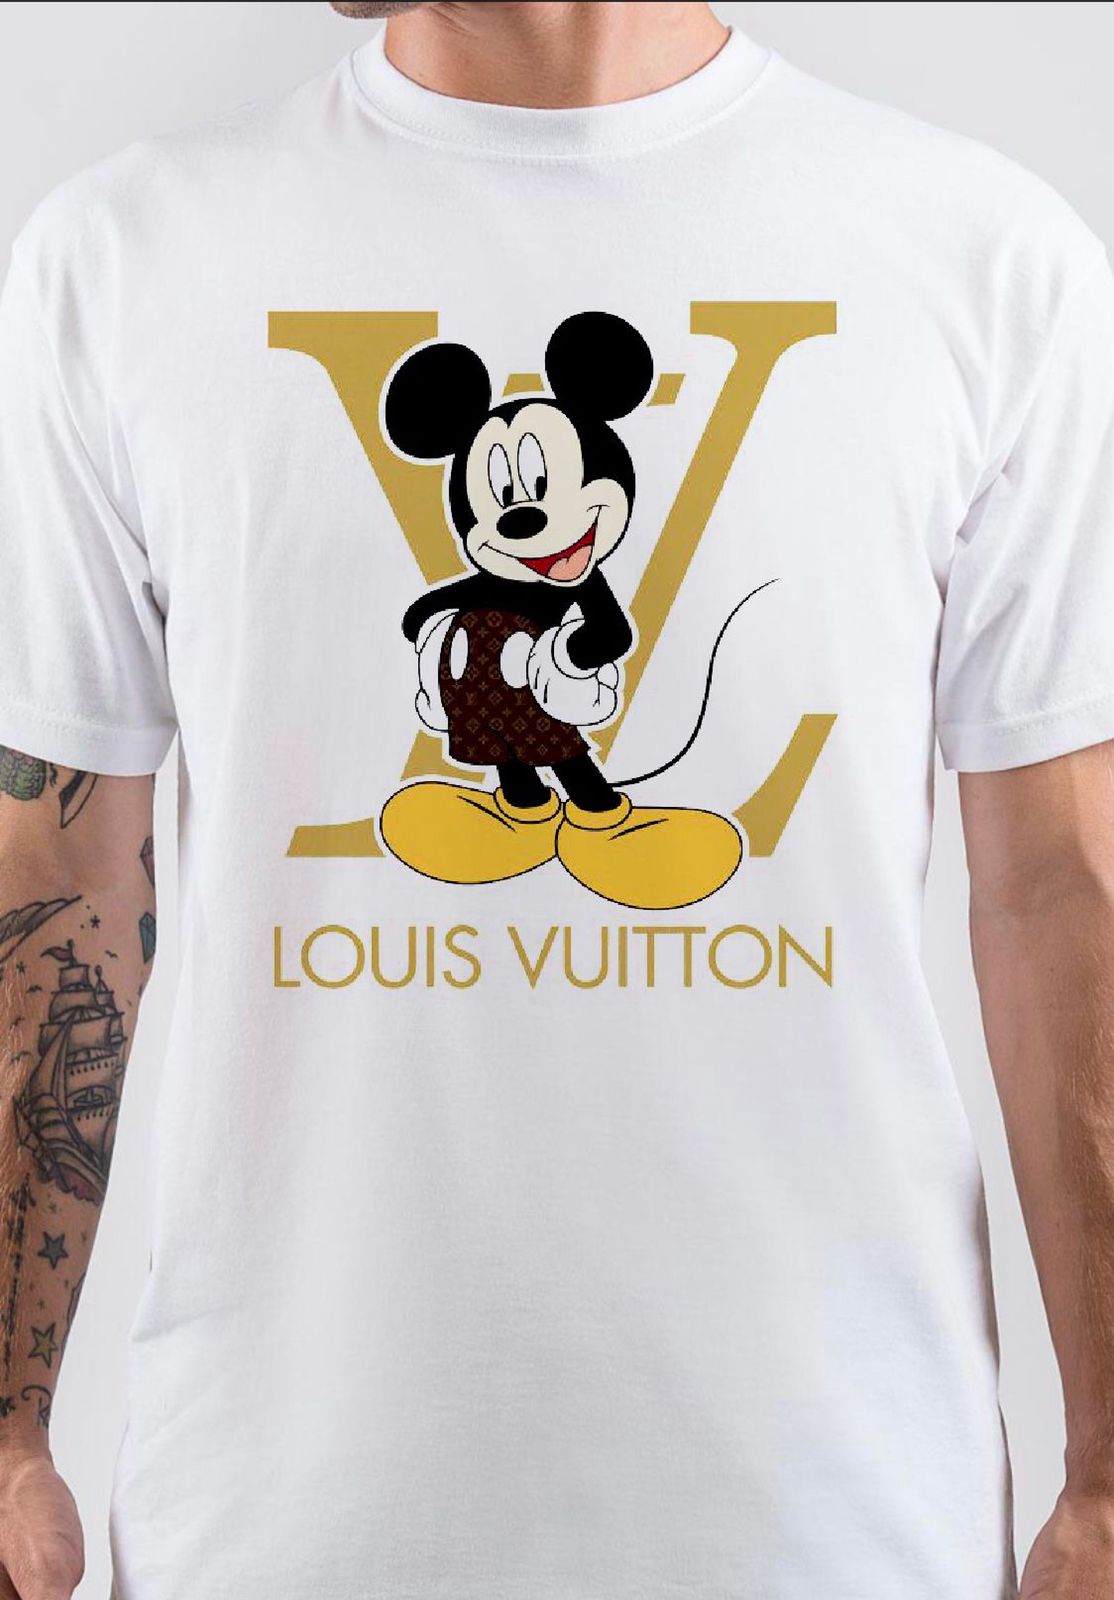 Louis Vuitton Shirt, Louis Vuitton T Shirt, Louis India